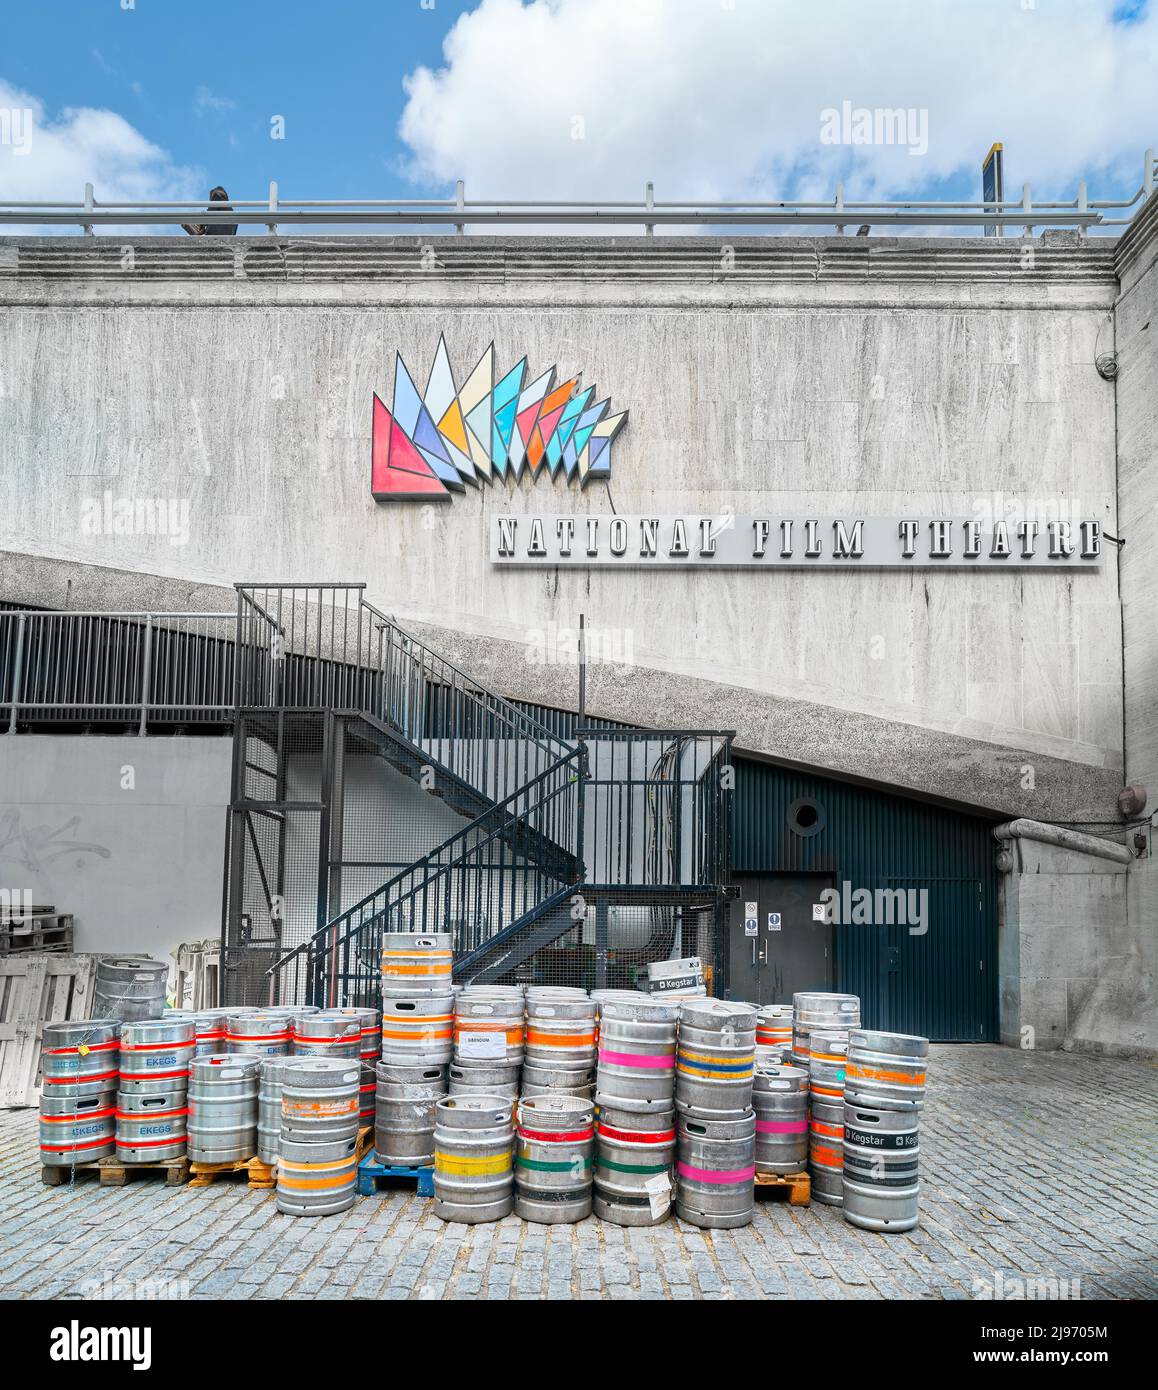 Barili vuoti di birra fuori dal BFI (british film Institute) National Film Theater, South Bank, Londra, Inghilterra. Foto Stock